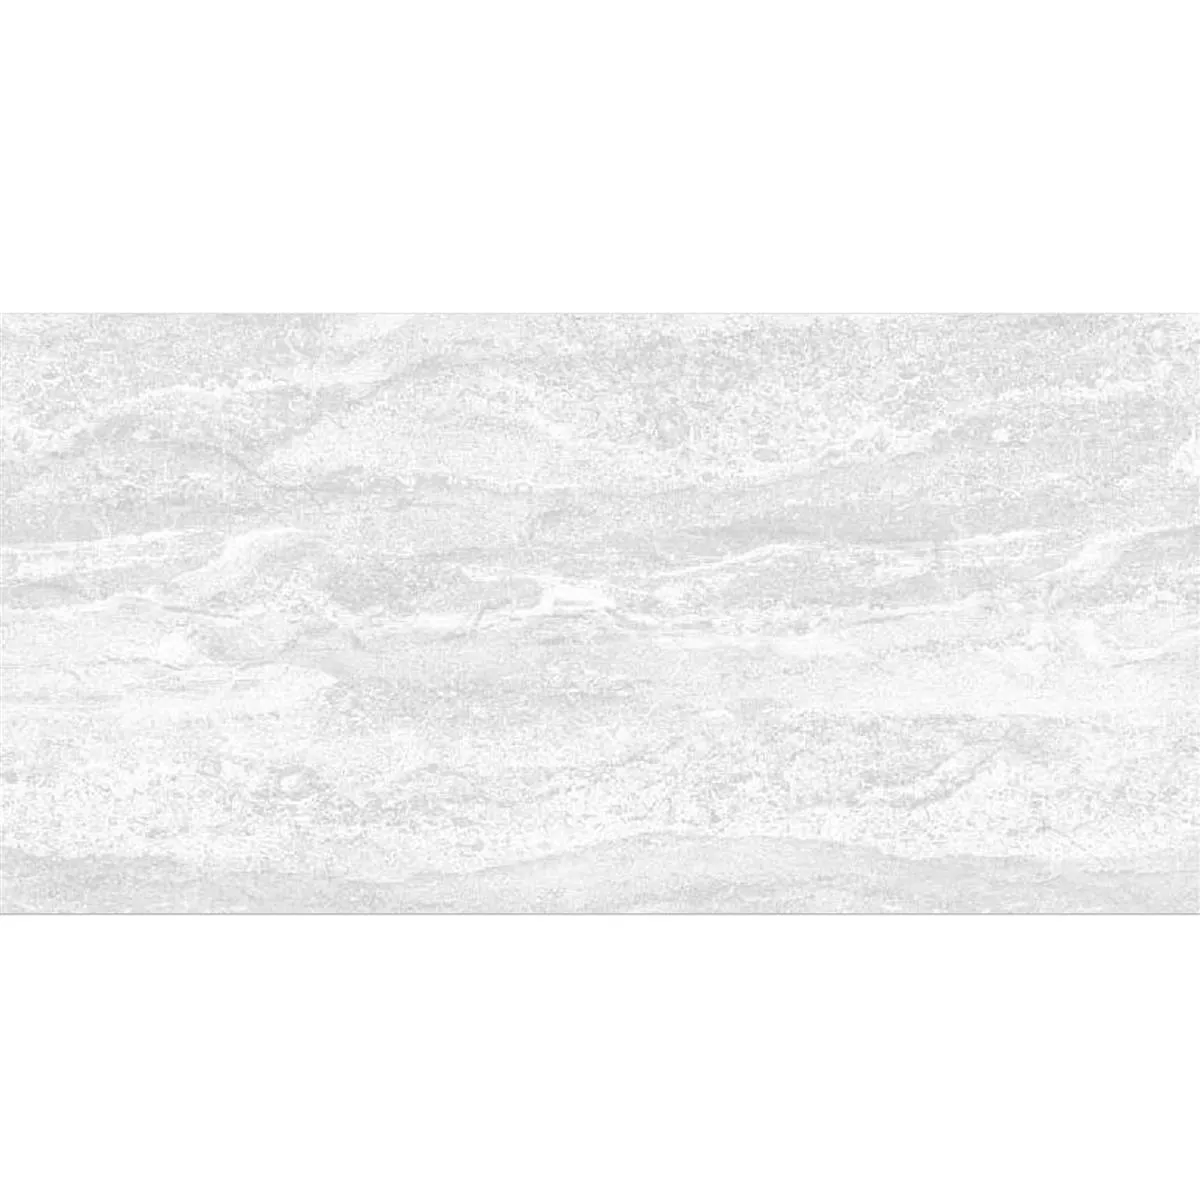 Muster Wandfliese Bellinzona Weiß Strukturiert 30x60cm